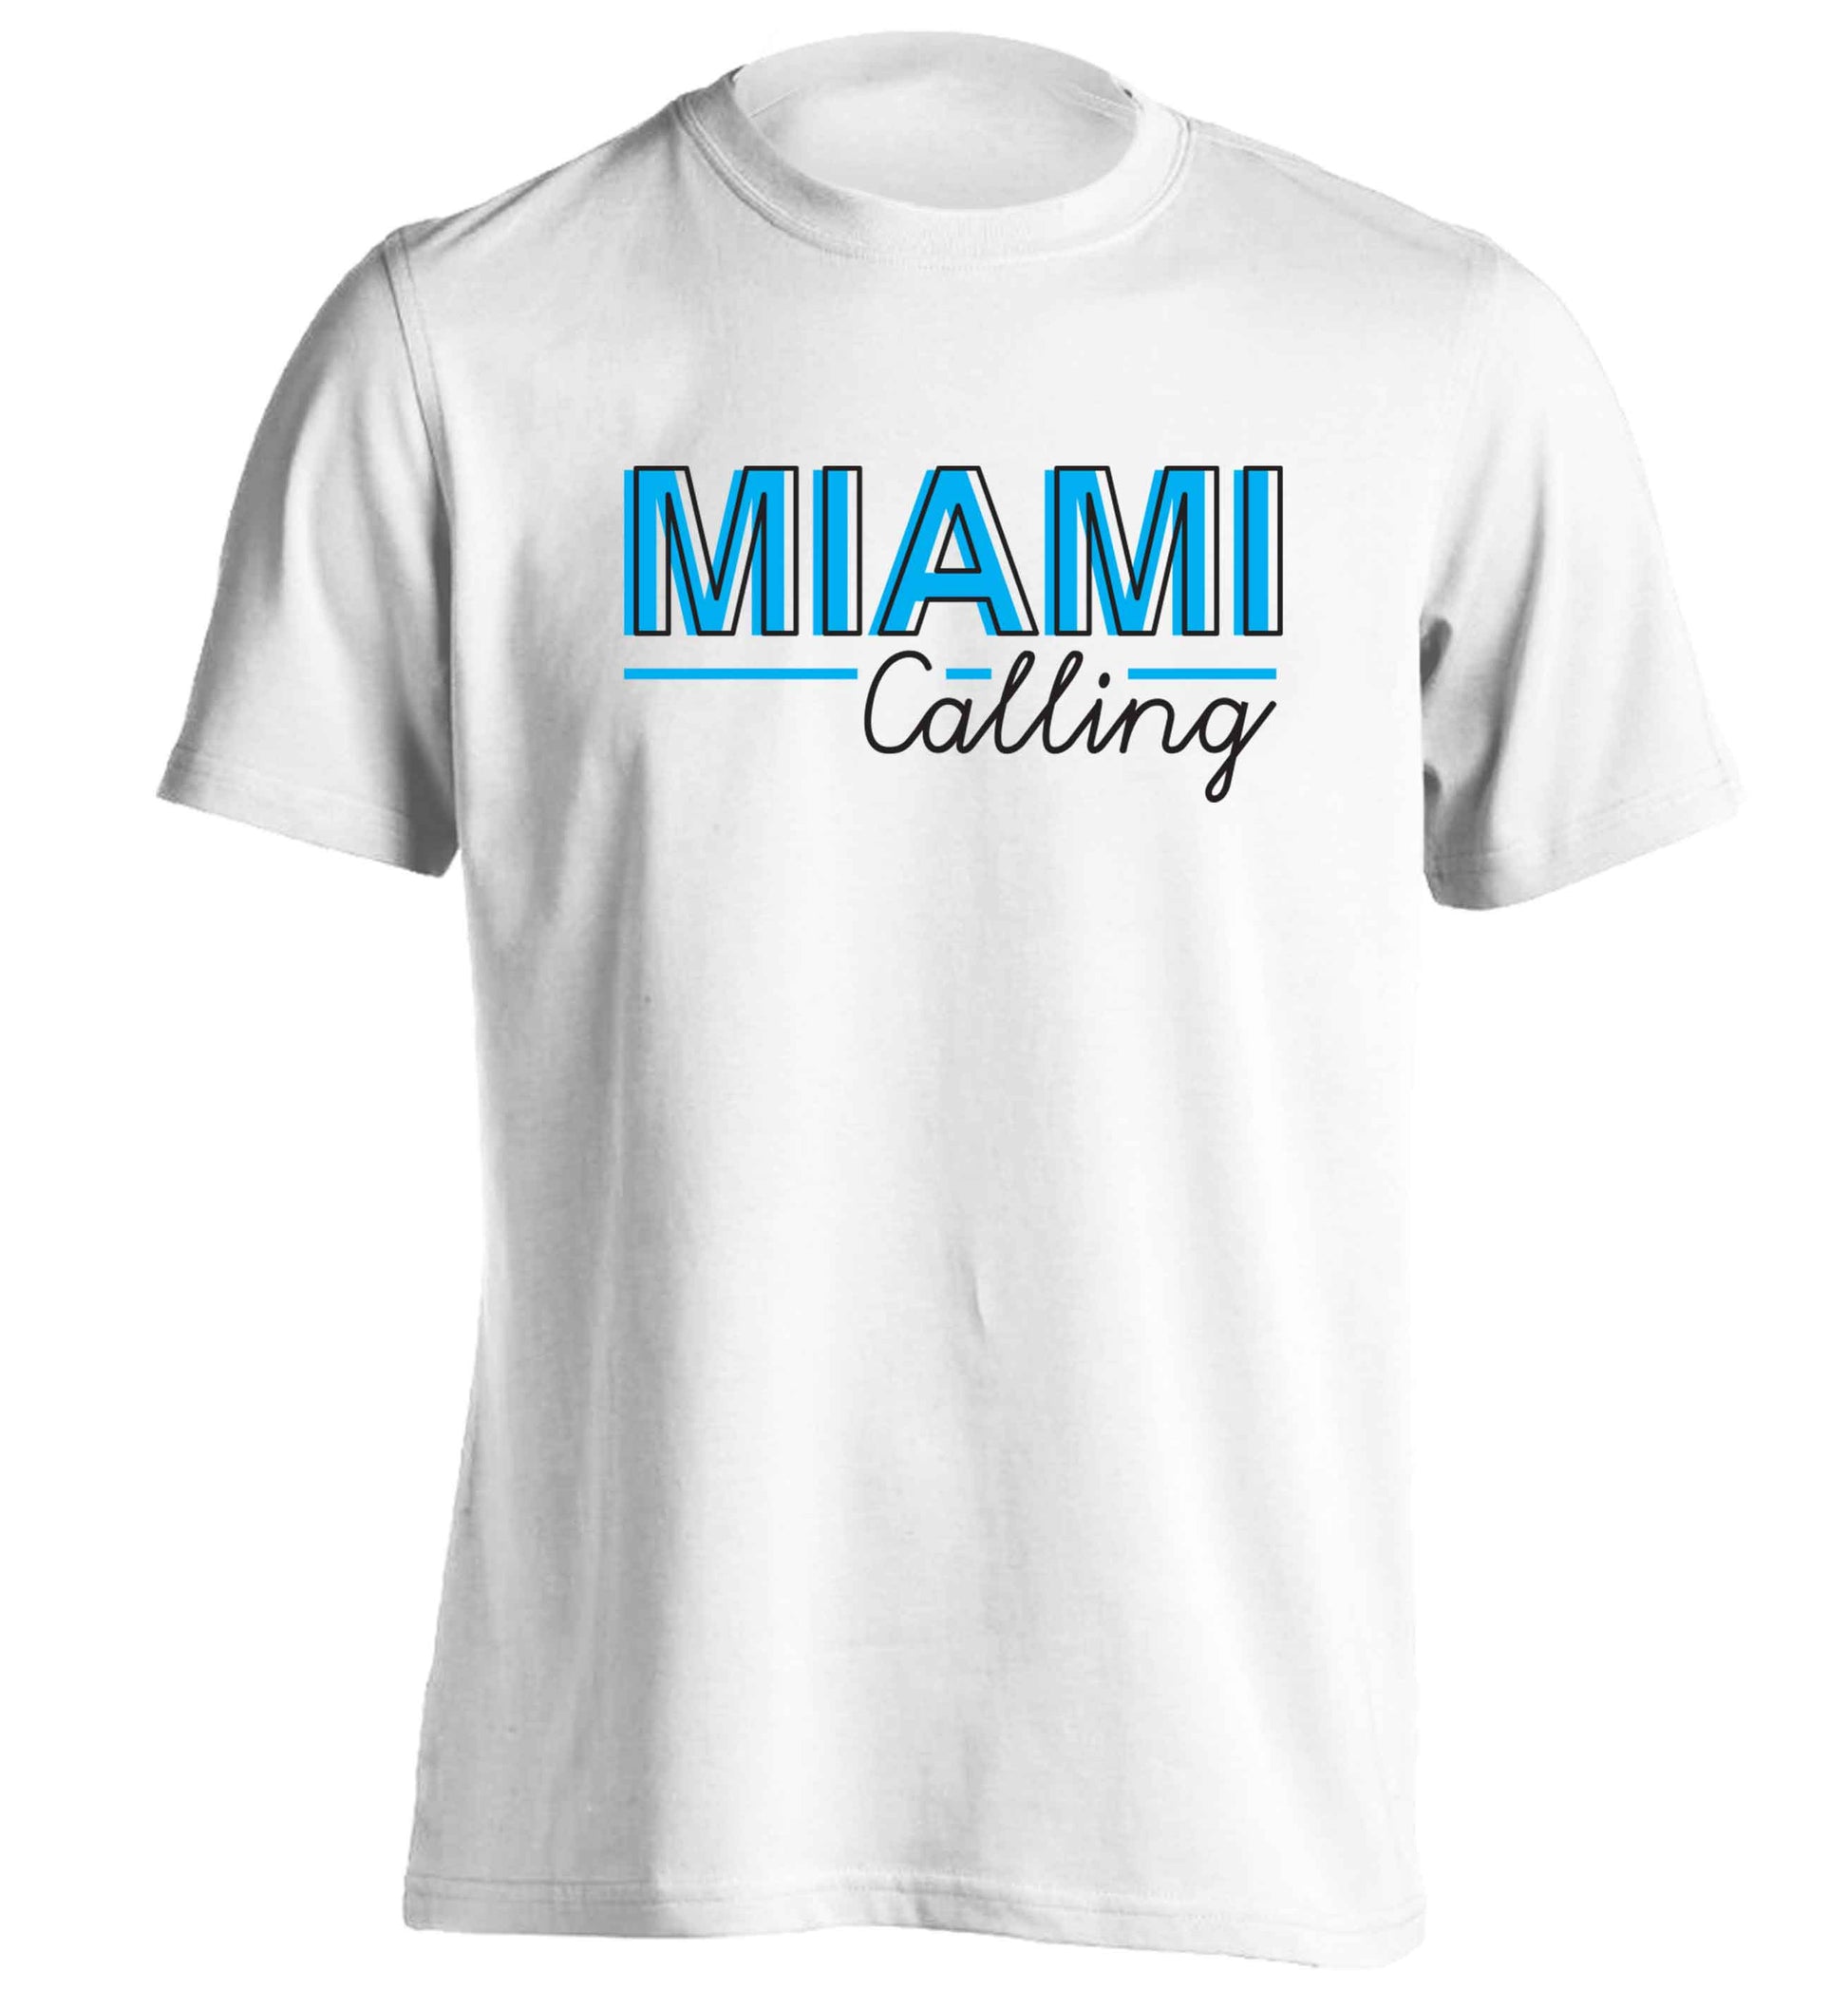 Miami calling adults unisex white Tshirt 2XL